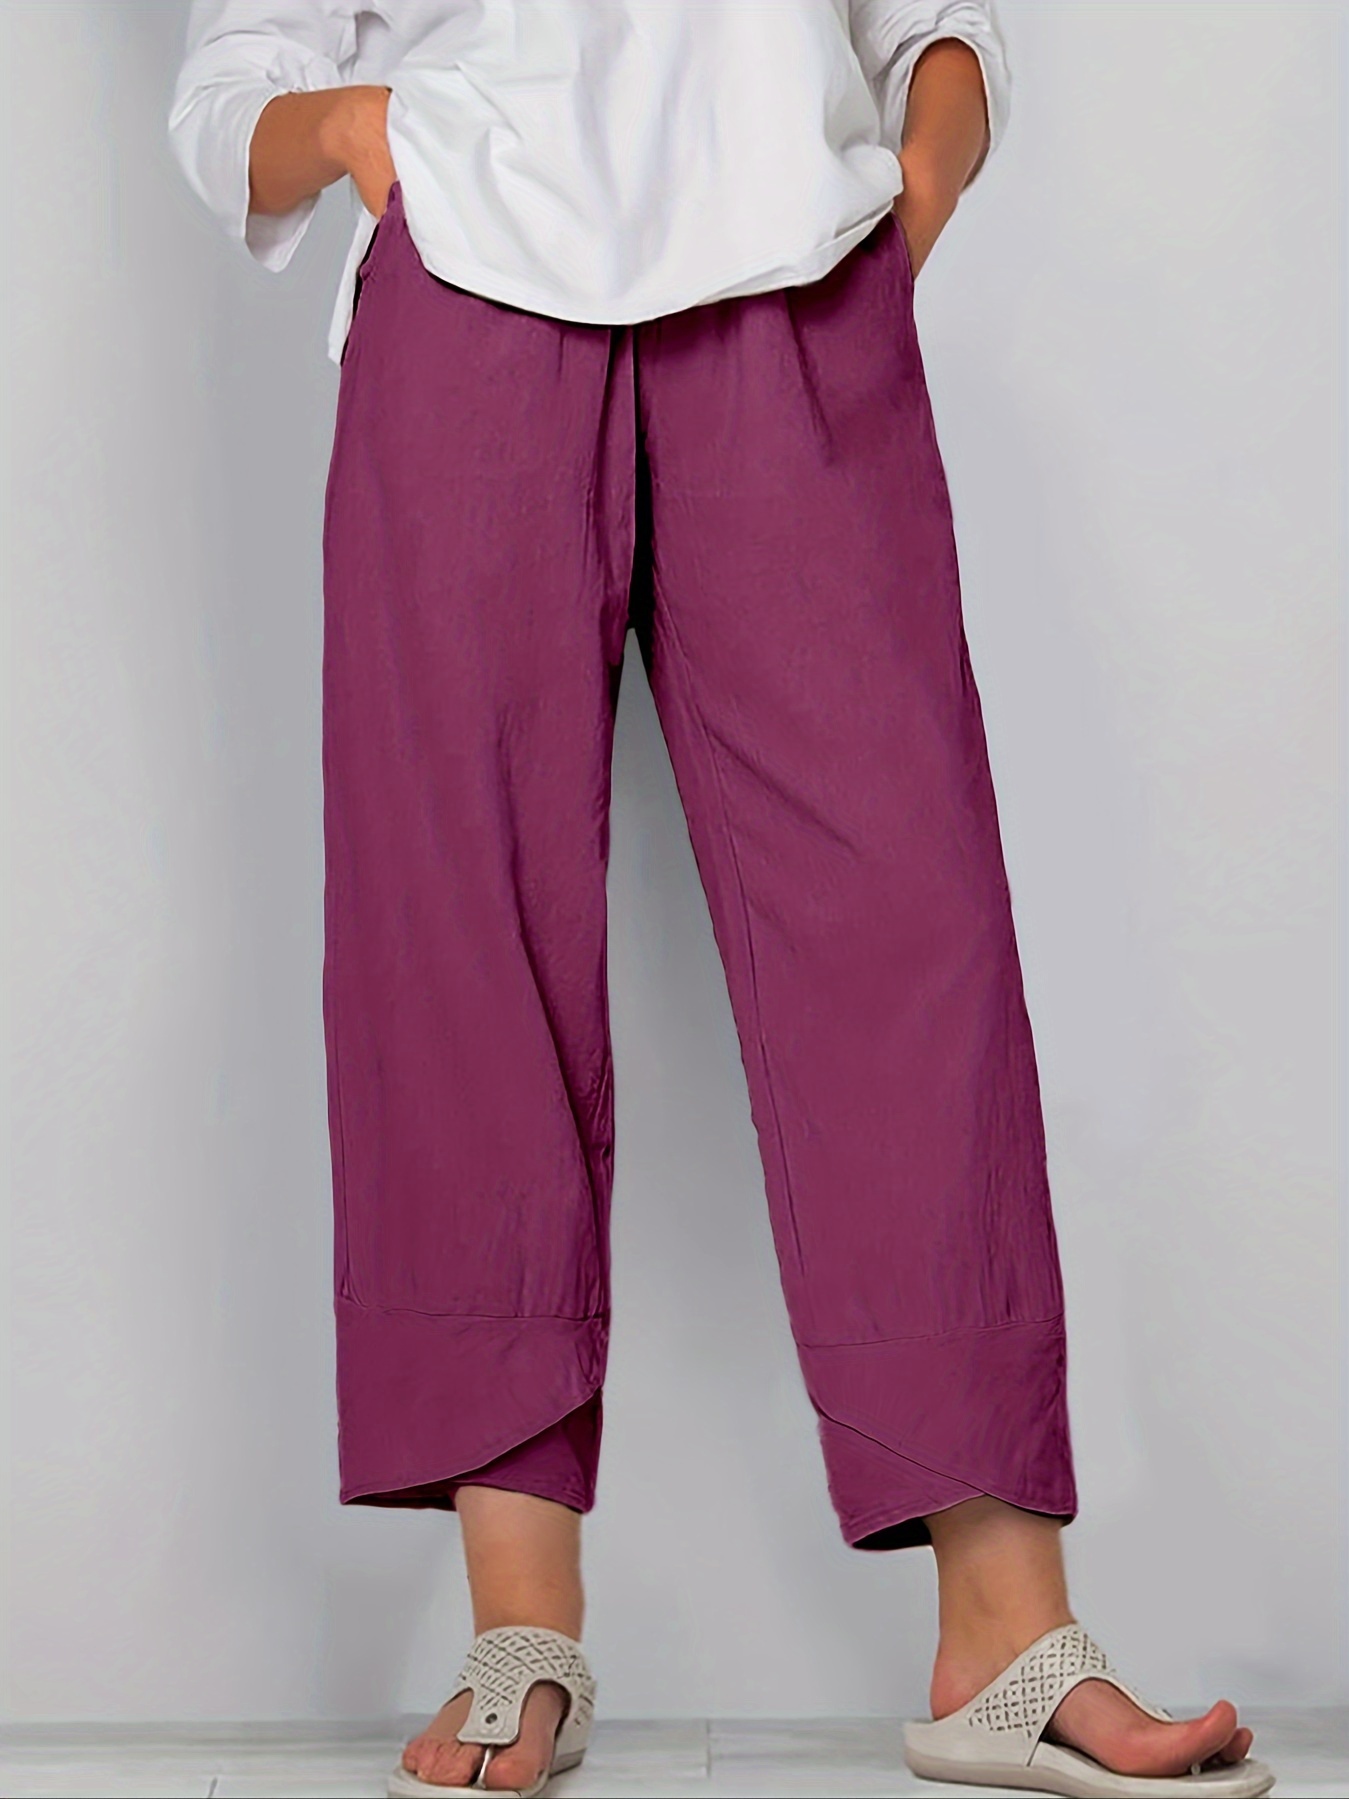 Aayomet Summer Pants Women Ladies Solid Color Casual Pocket Loose